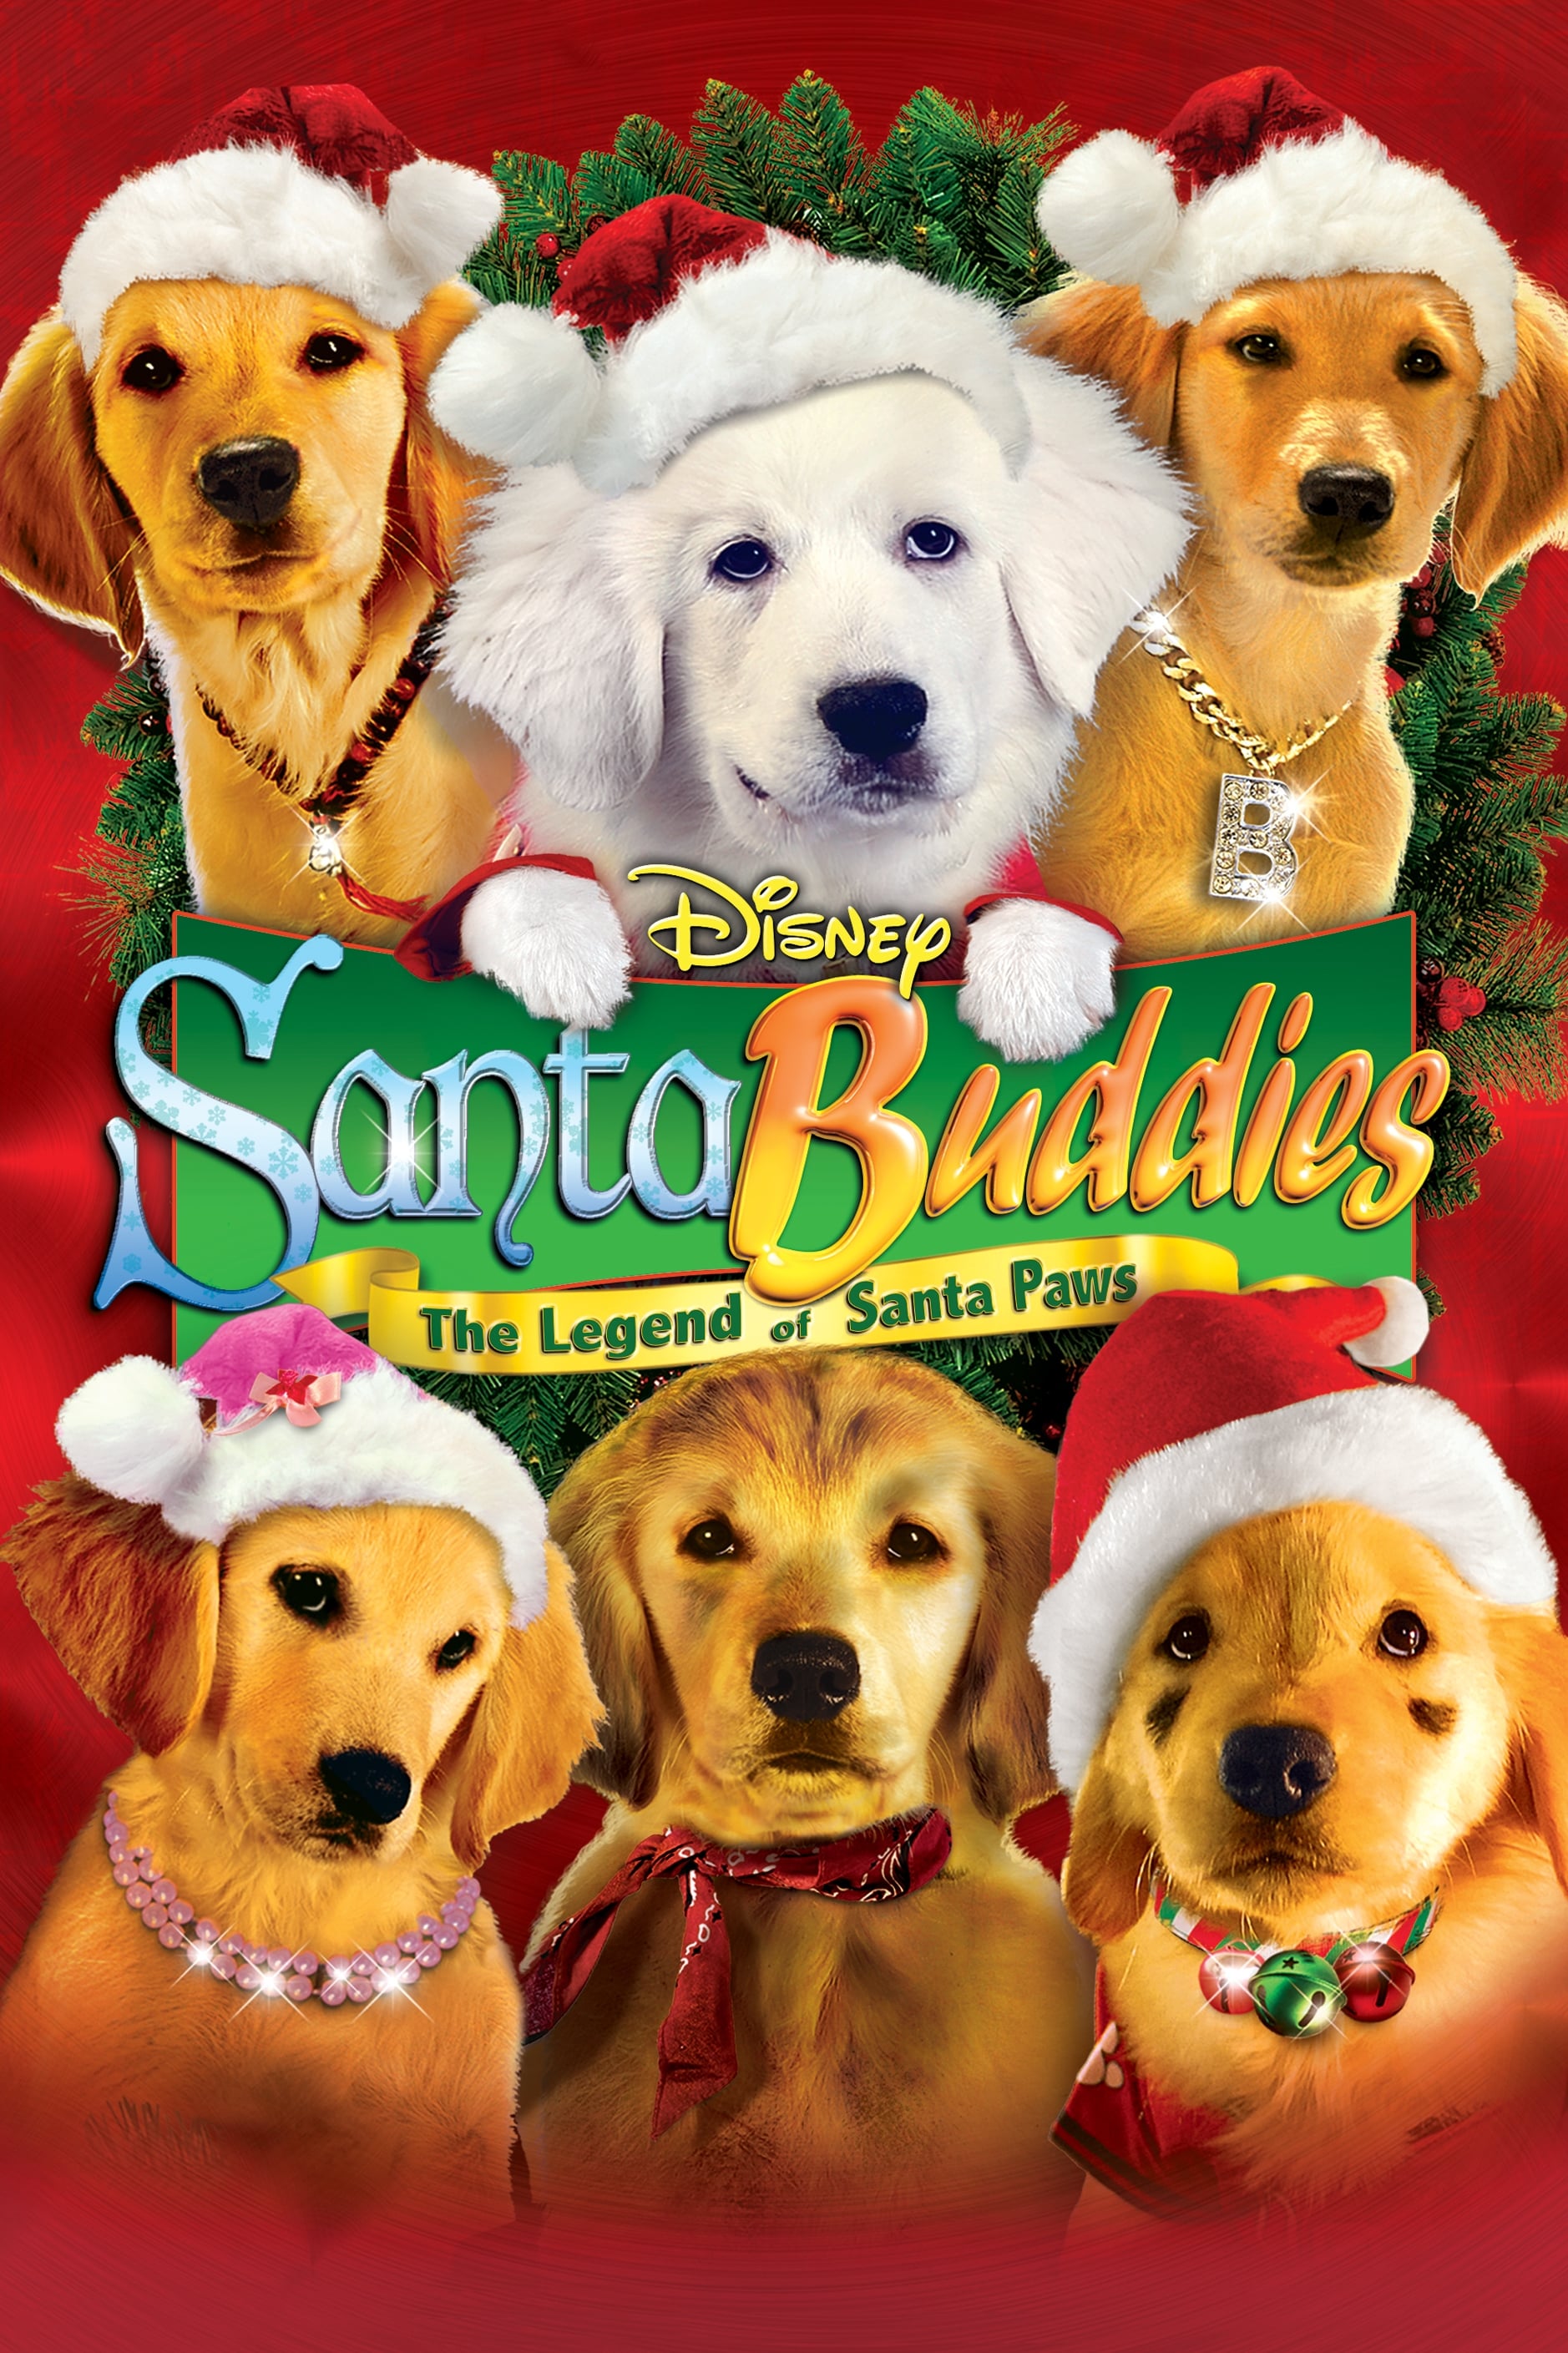 Santa Buddies: Uma Aventura de Natal